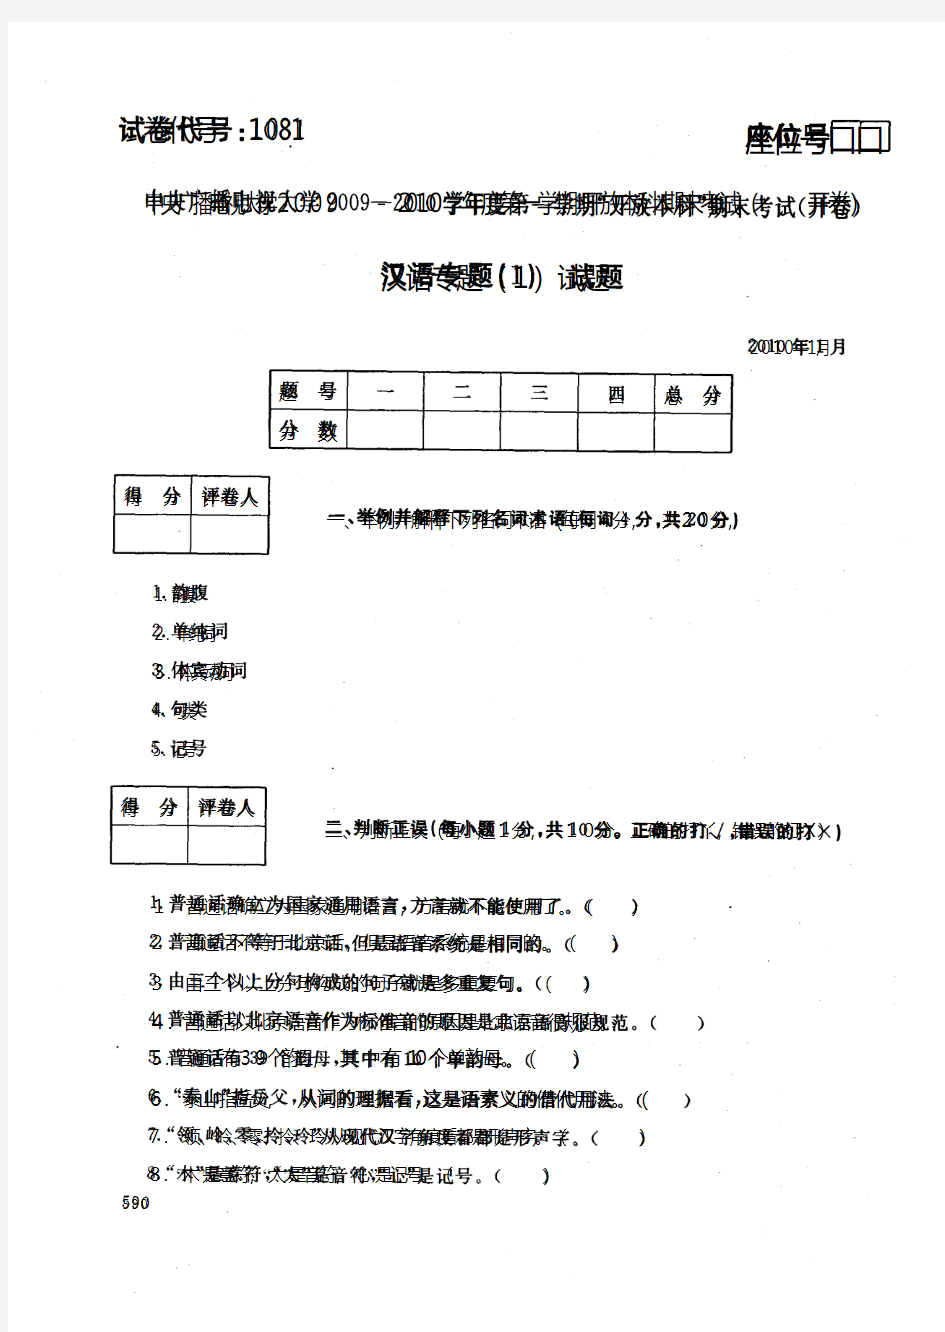 中央电大开放本科汉语言文学专业汉语专题试题(1)_1001